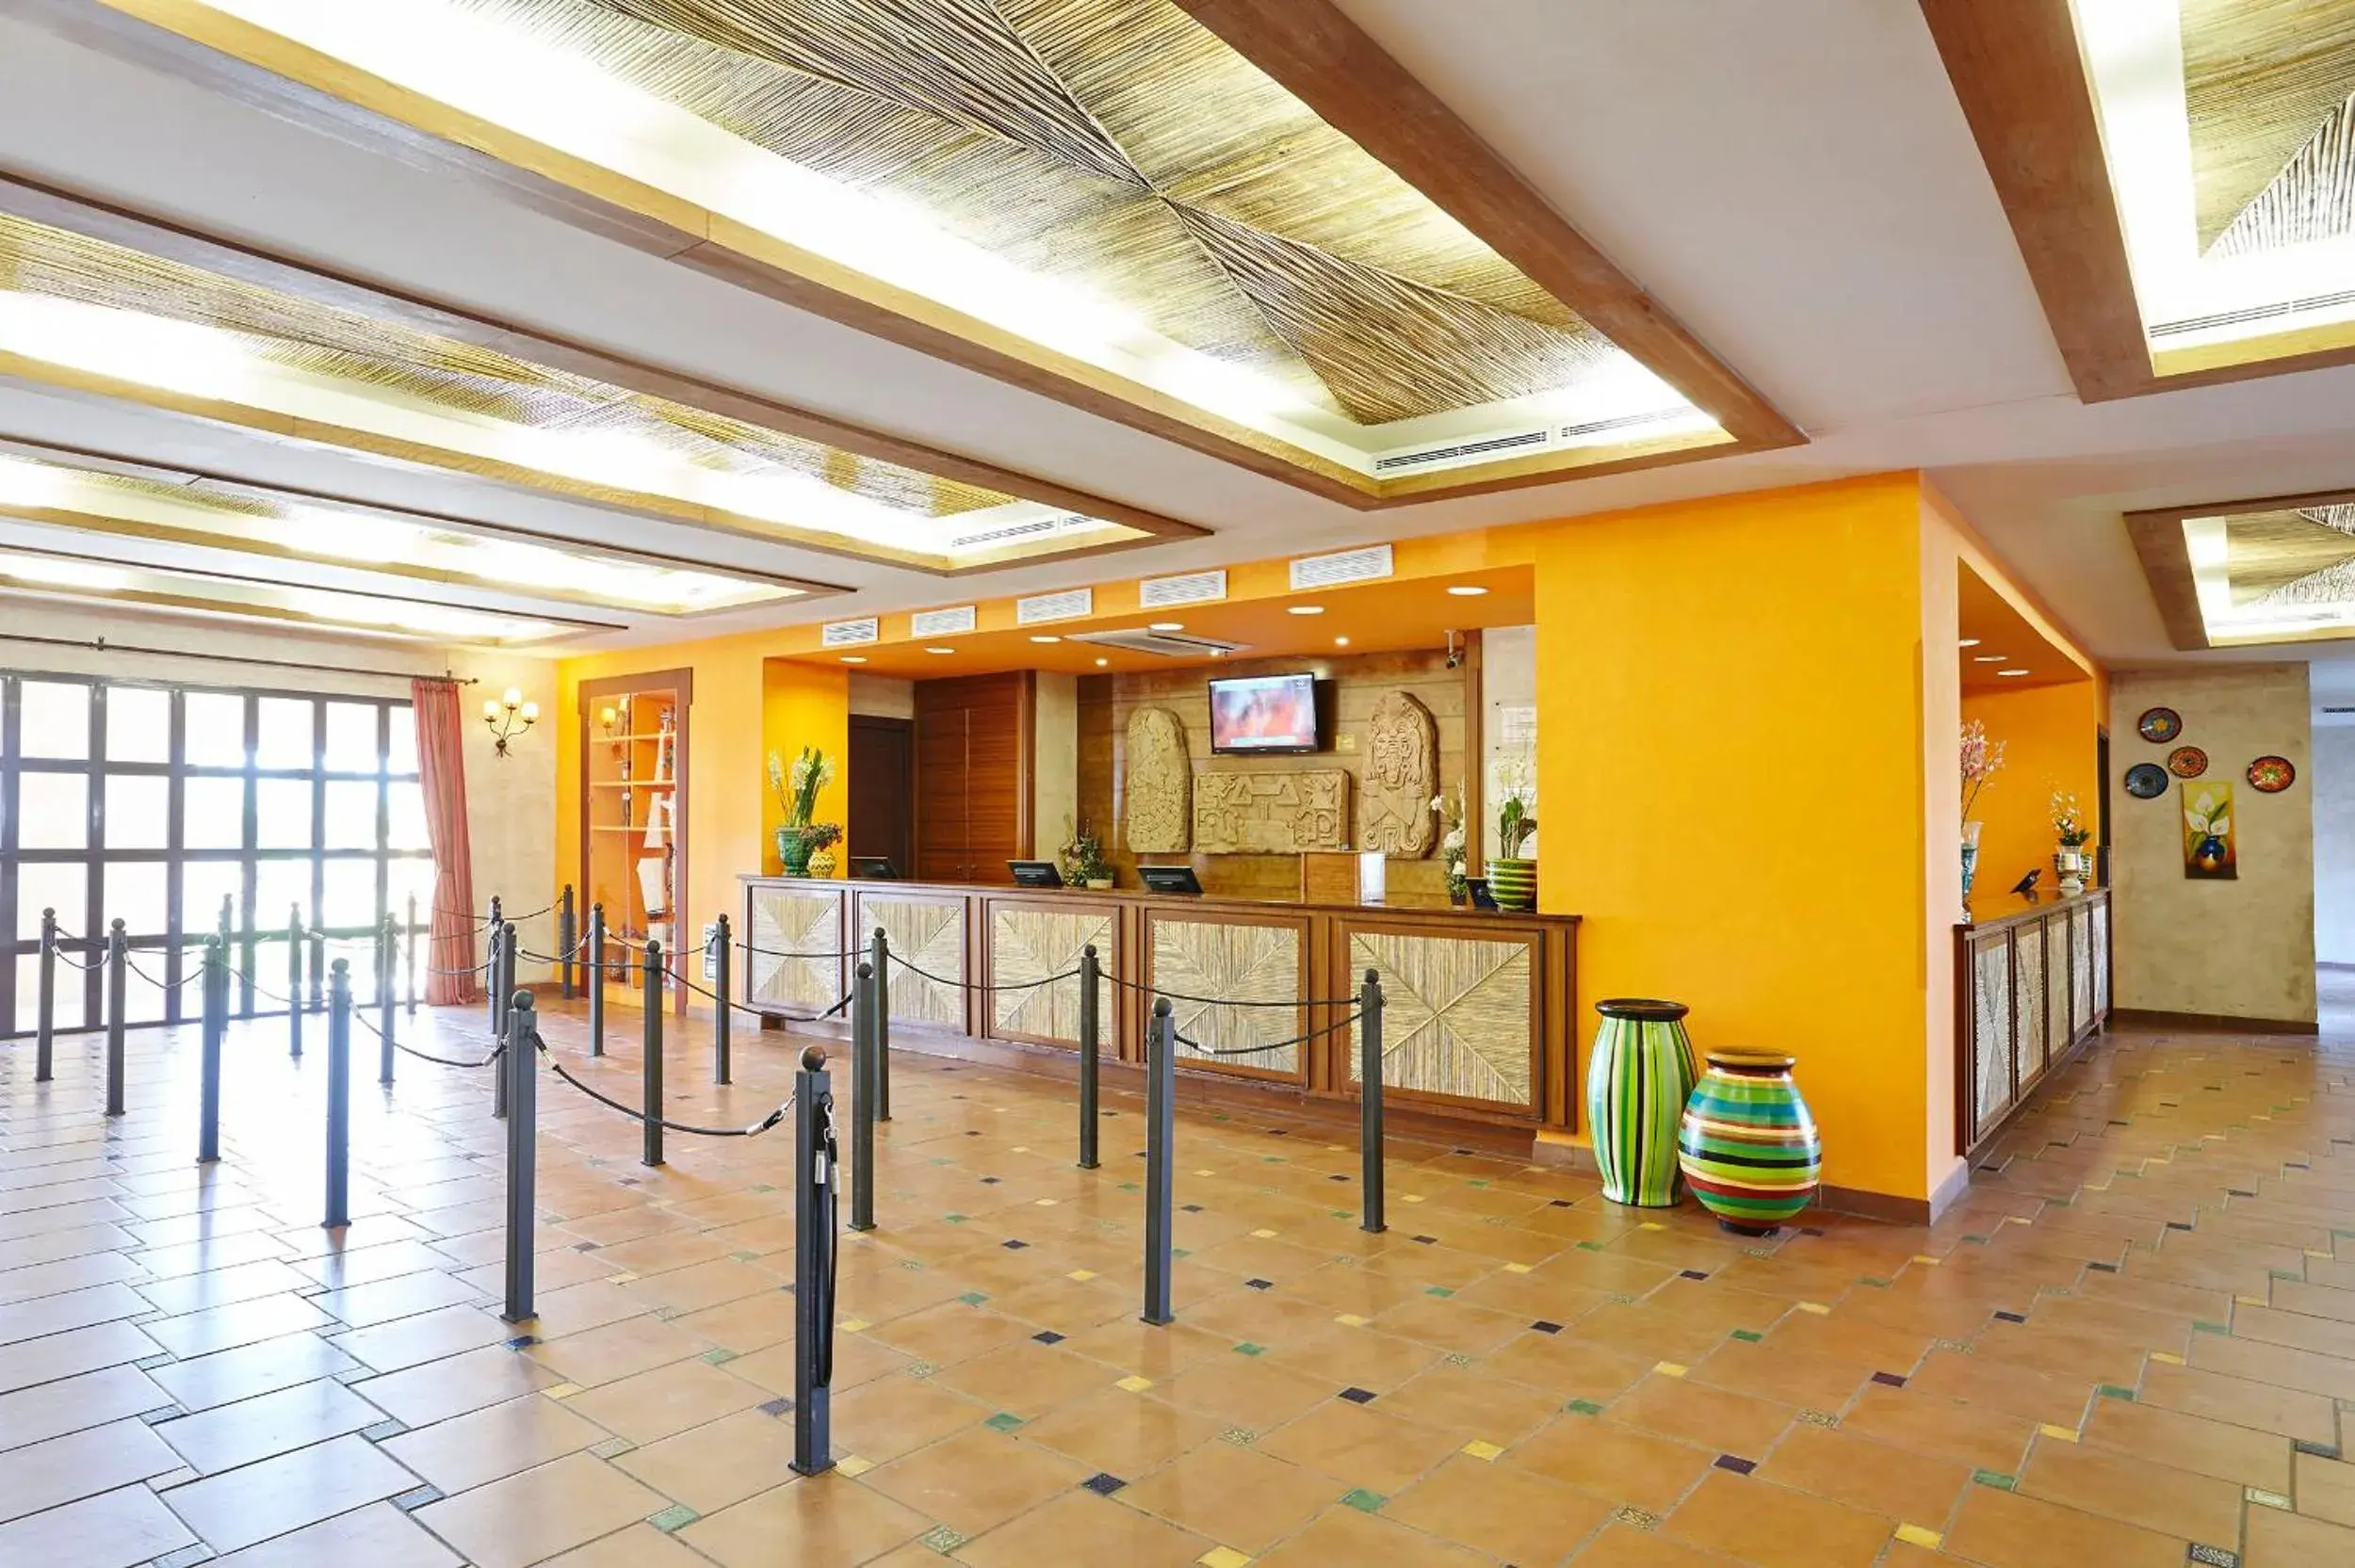 Lobby or reception, Lobby/Reception in PortAventura® Hotel El Paso - Includes PortAventura Park Tickets